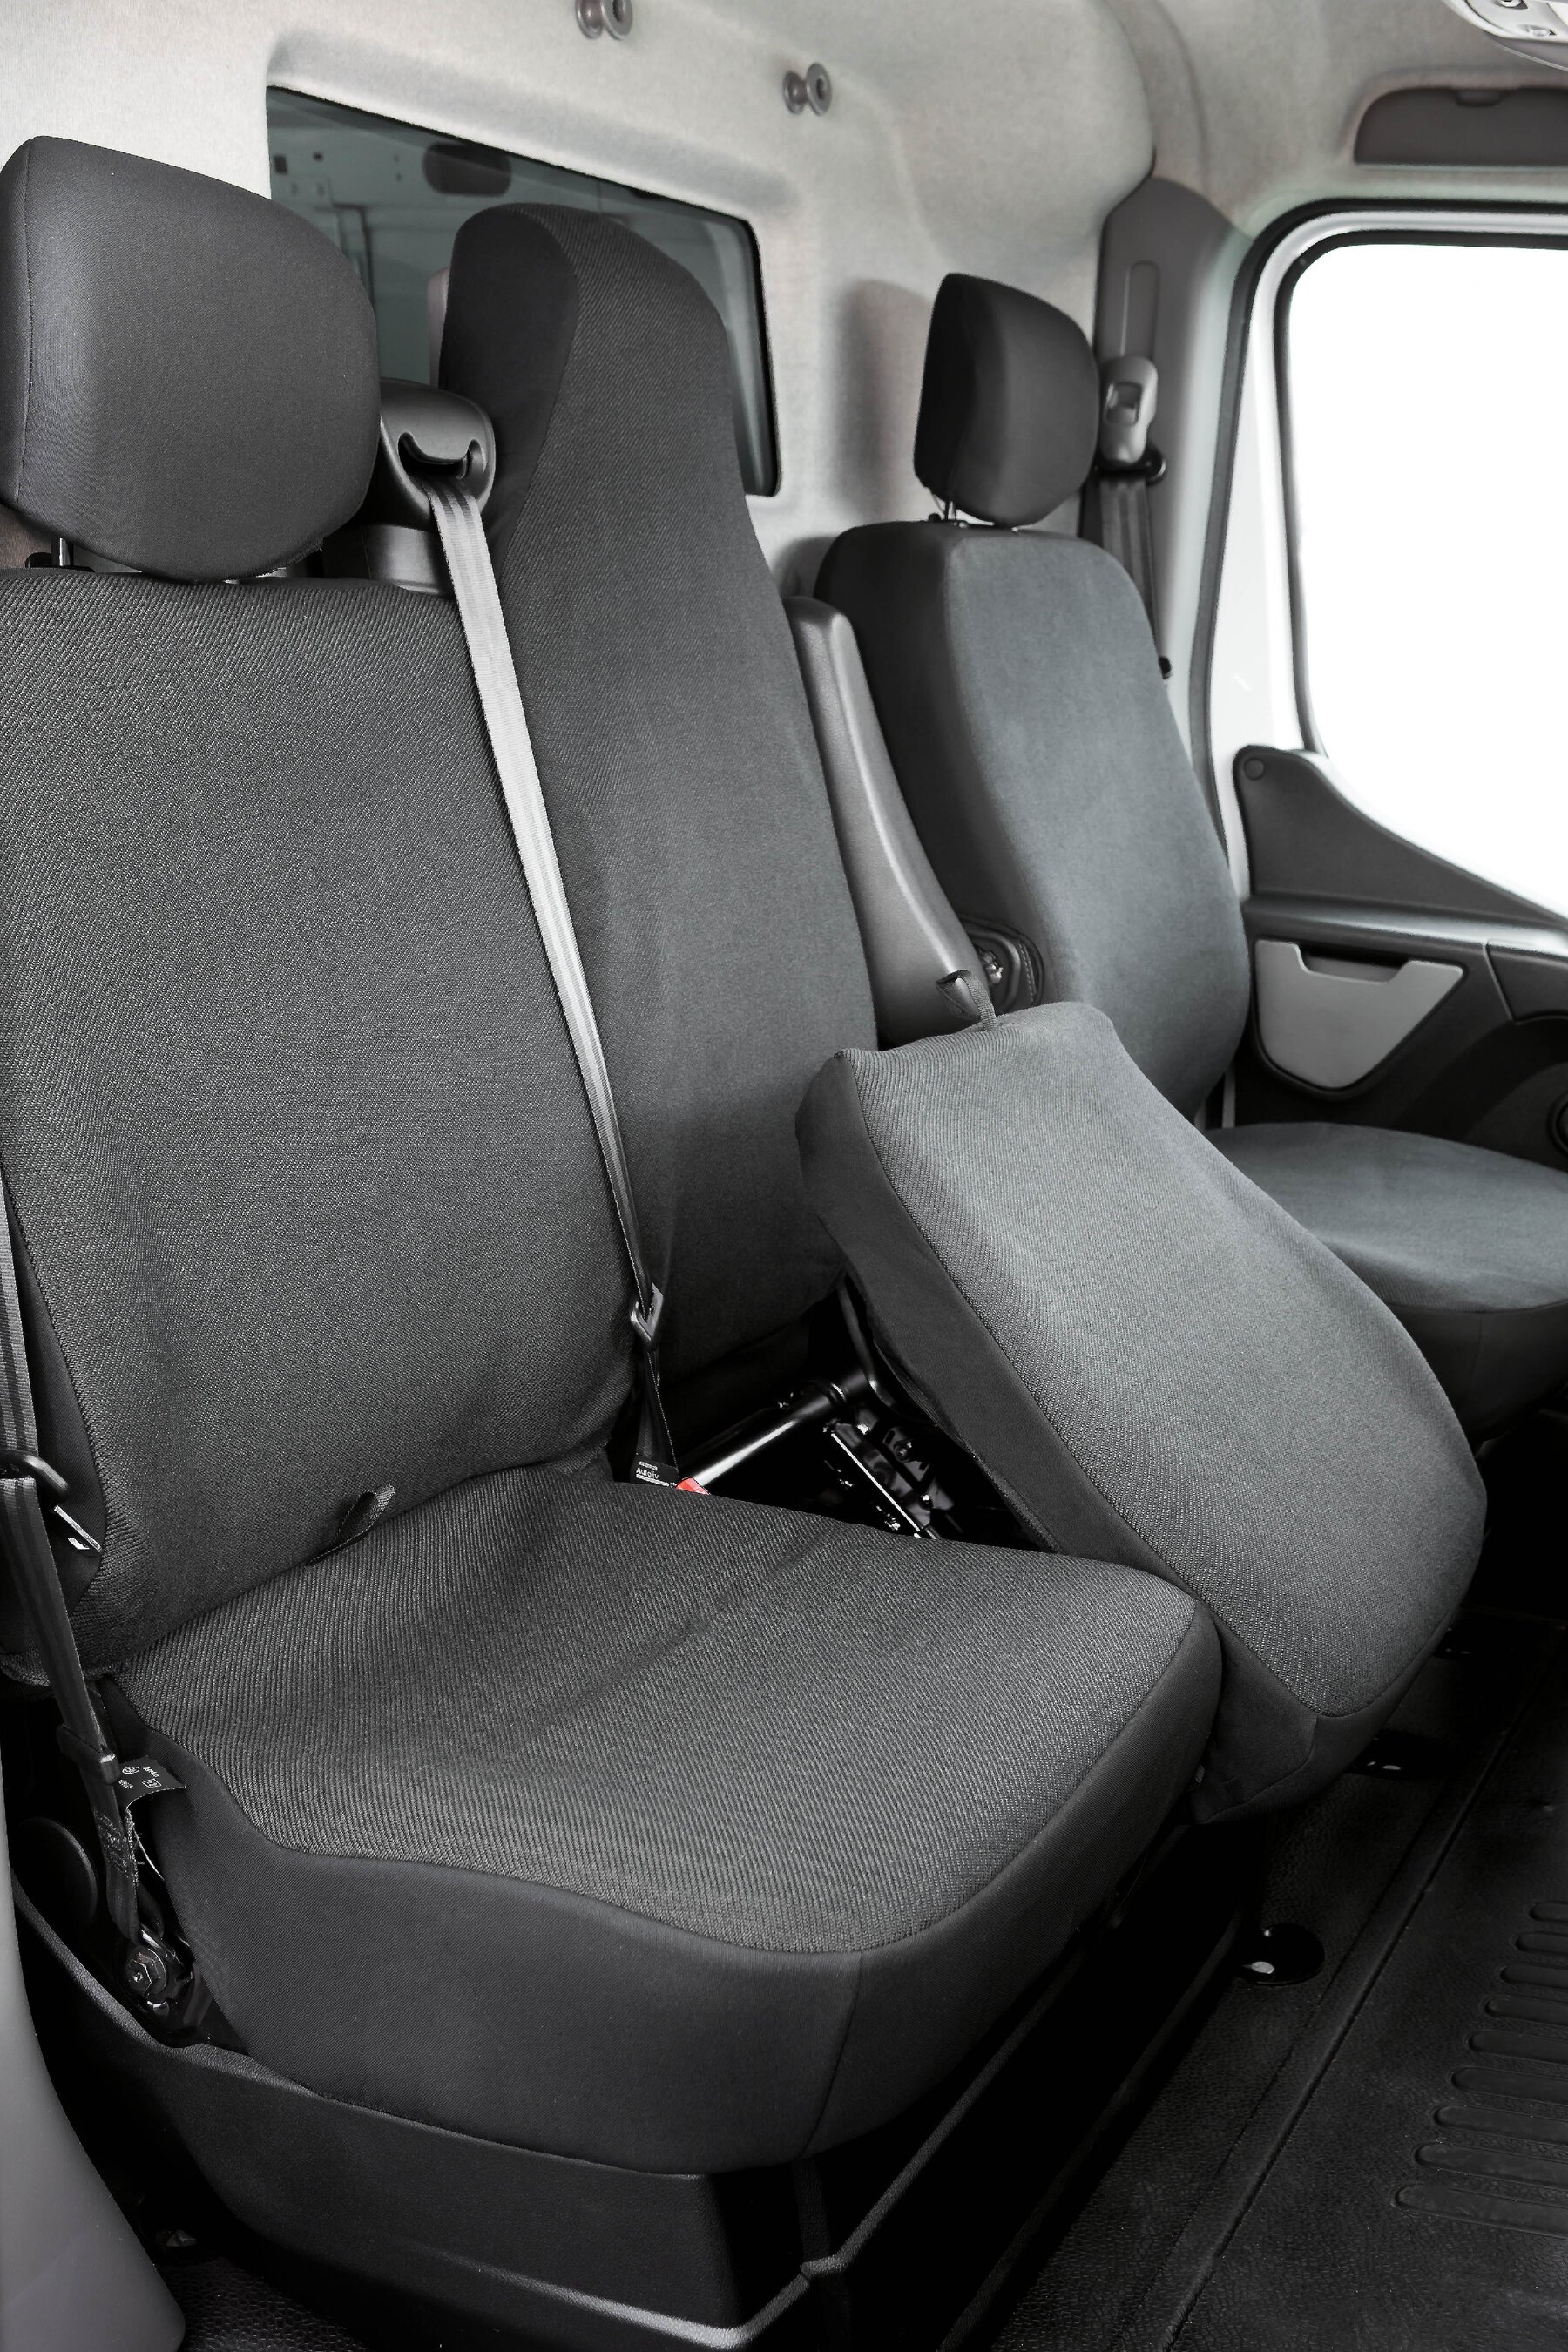 Housse de siège Transporter en tissu pour Opel Movano, Renault Master, Nissan Interstar, siège simple et 2 housses de siège avant simples